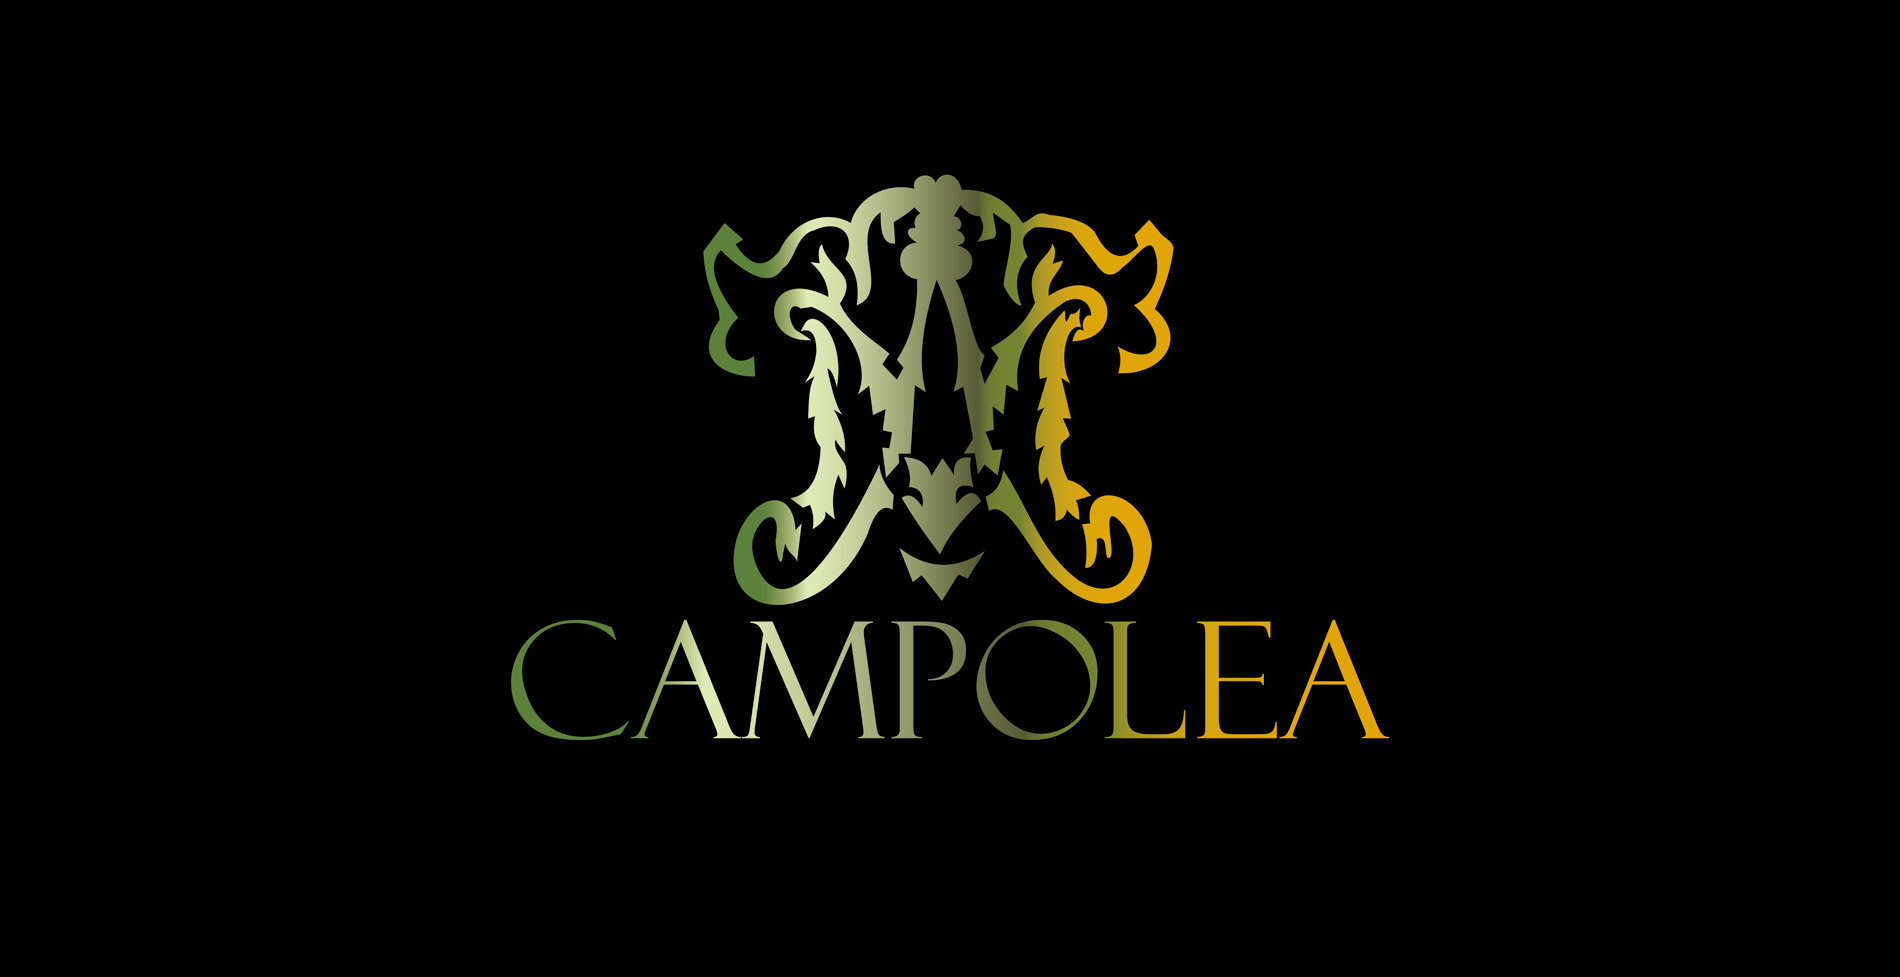 Diseño gráfico y creativo de etiquetas de aceite de oliva virgen extra para la marca CAMPOLEA gama de tipo gourmet